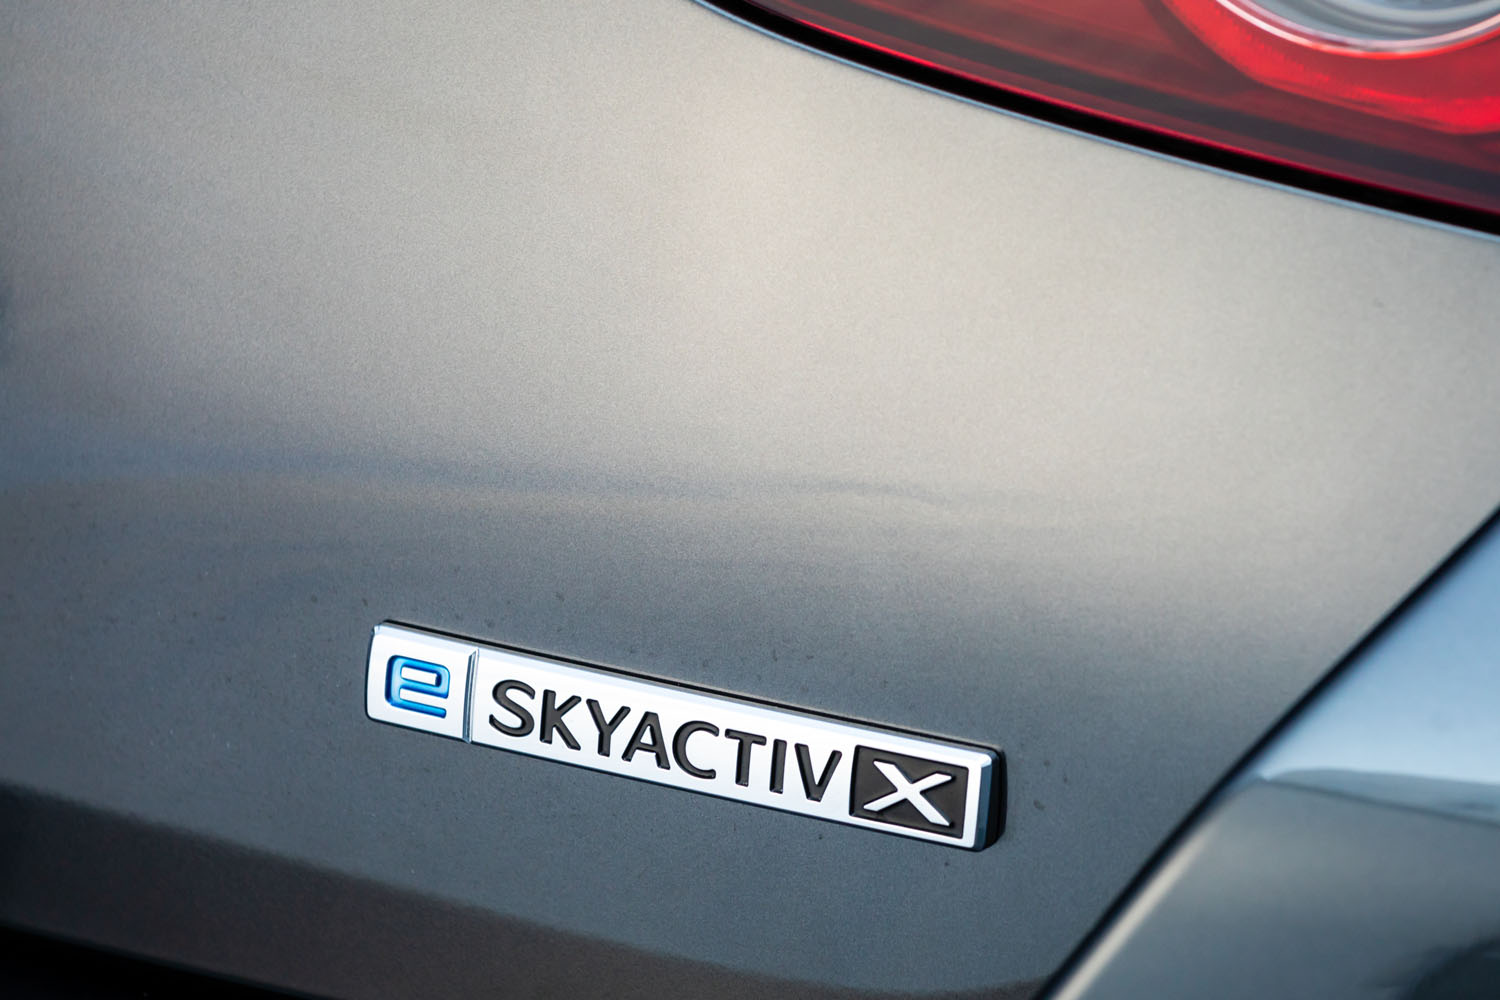 装飾類に関しては、「スカイアクティブX」搭載車に「e-SYKACTIV X」のバッジが装着されたのもトピック。電動車（マイルドハイブリッド車）であることが強調されている。